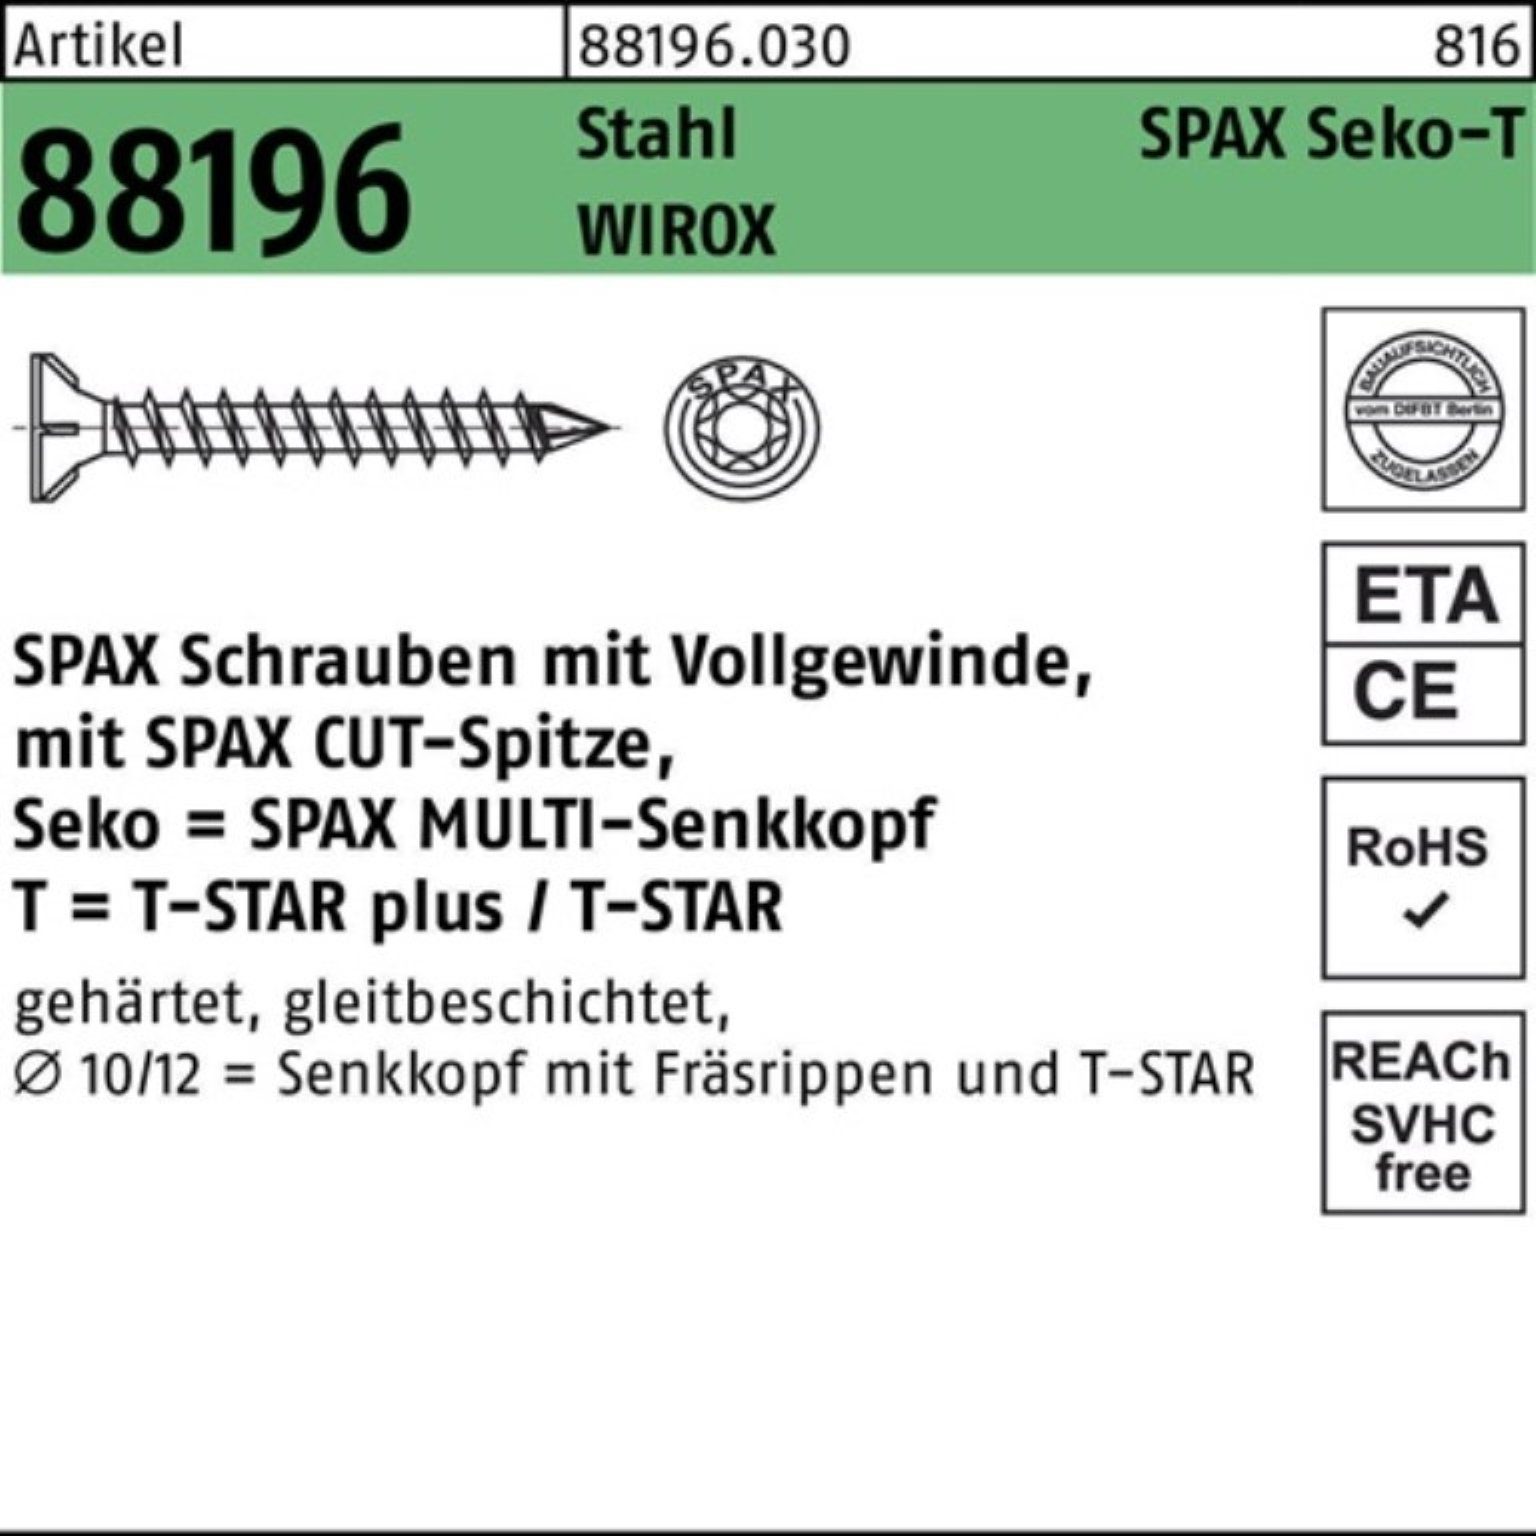 10x350-T50 galv. Seko VG R 100er 88196 Schraube Schraube Sta Spitze/T-STAR Pack SPAX